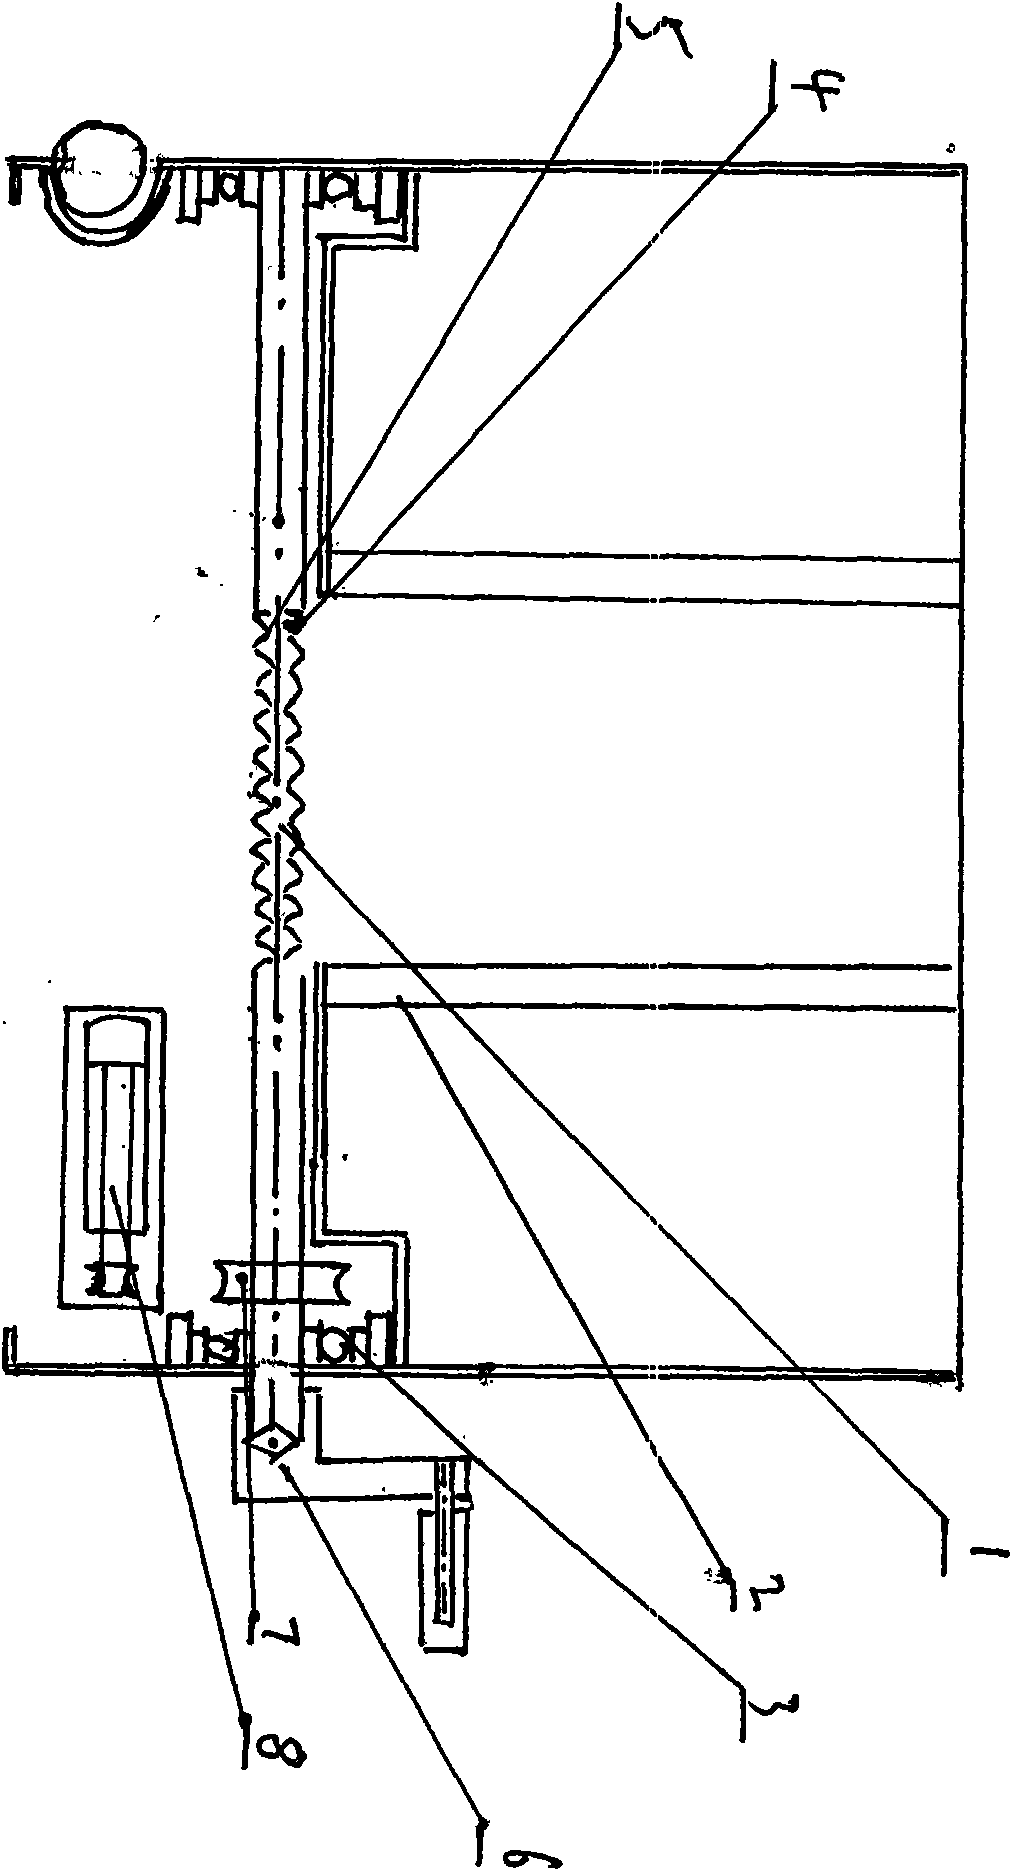 Hearth rotary furnace bar